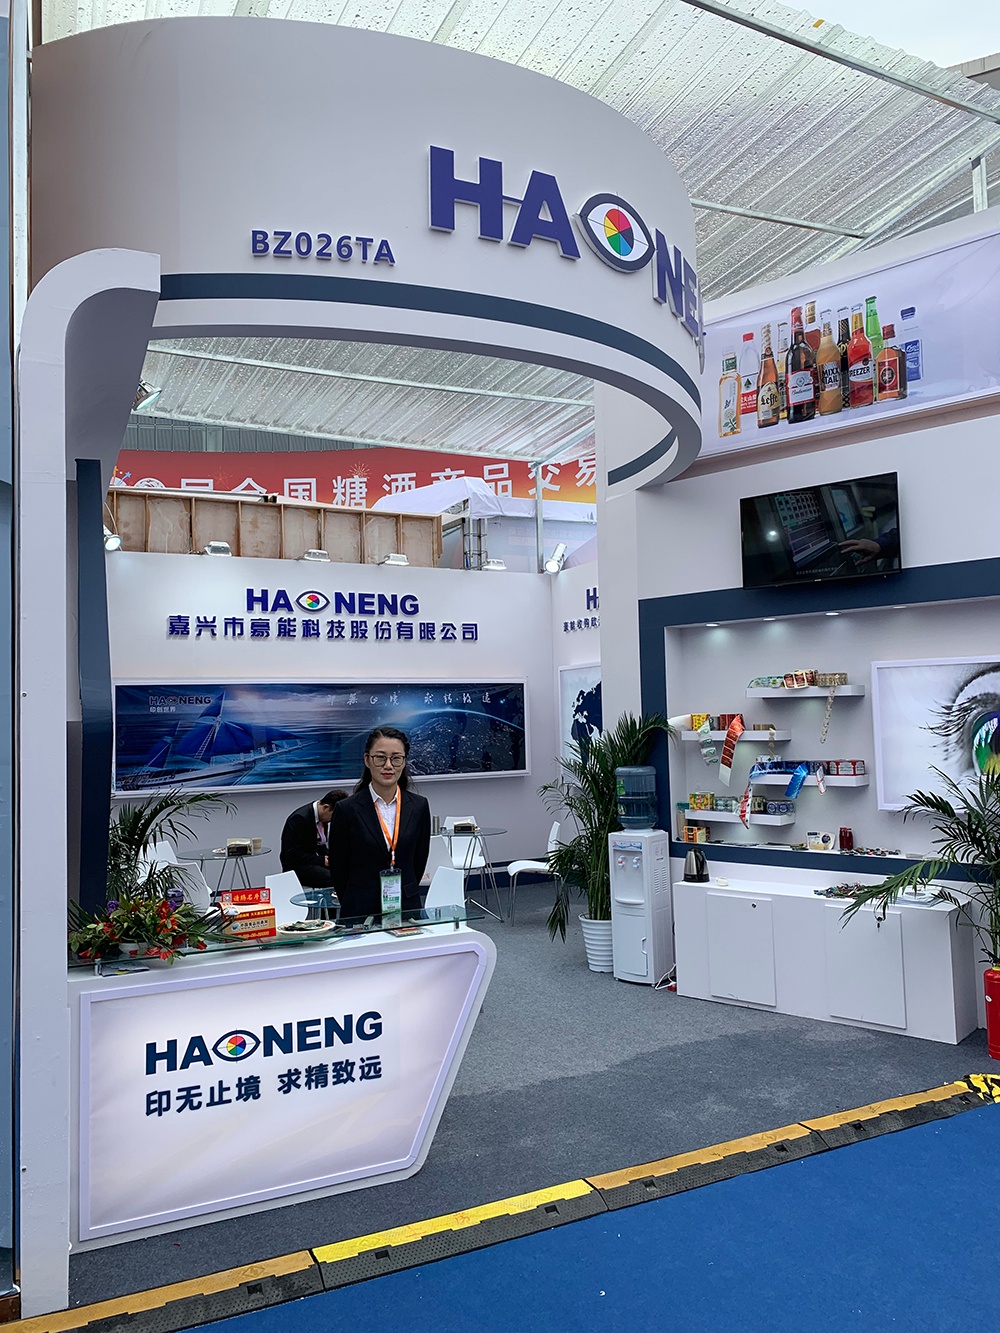 2018年cbb 中國國際酒、飲料制造技術及設備展覽會